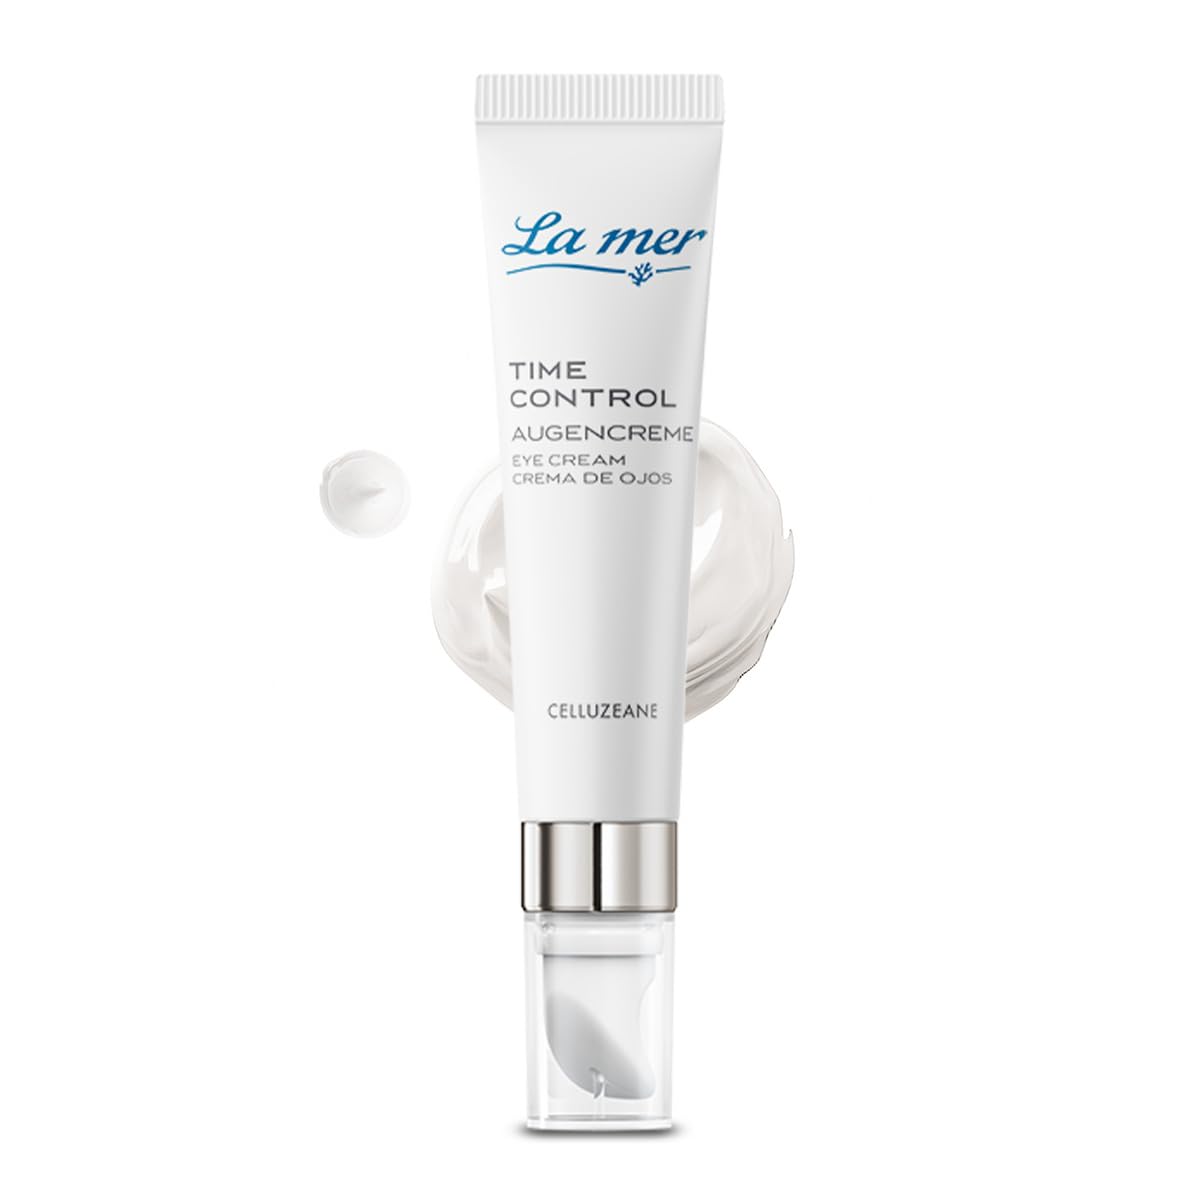 La mer Time Control Augencreme - Leichte Anti-Age Augenpflege - Mildert Augenschatten und bindet Feuchtigkeit - Wirkt abschwellend und reduziert die Ausprägung von Fältchen am Auge - 15 ml